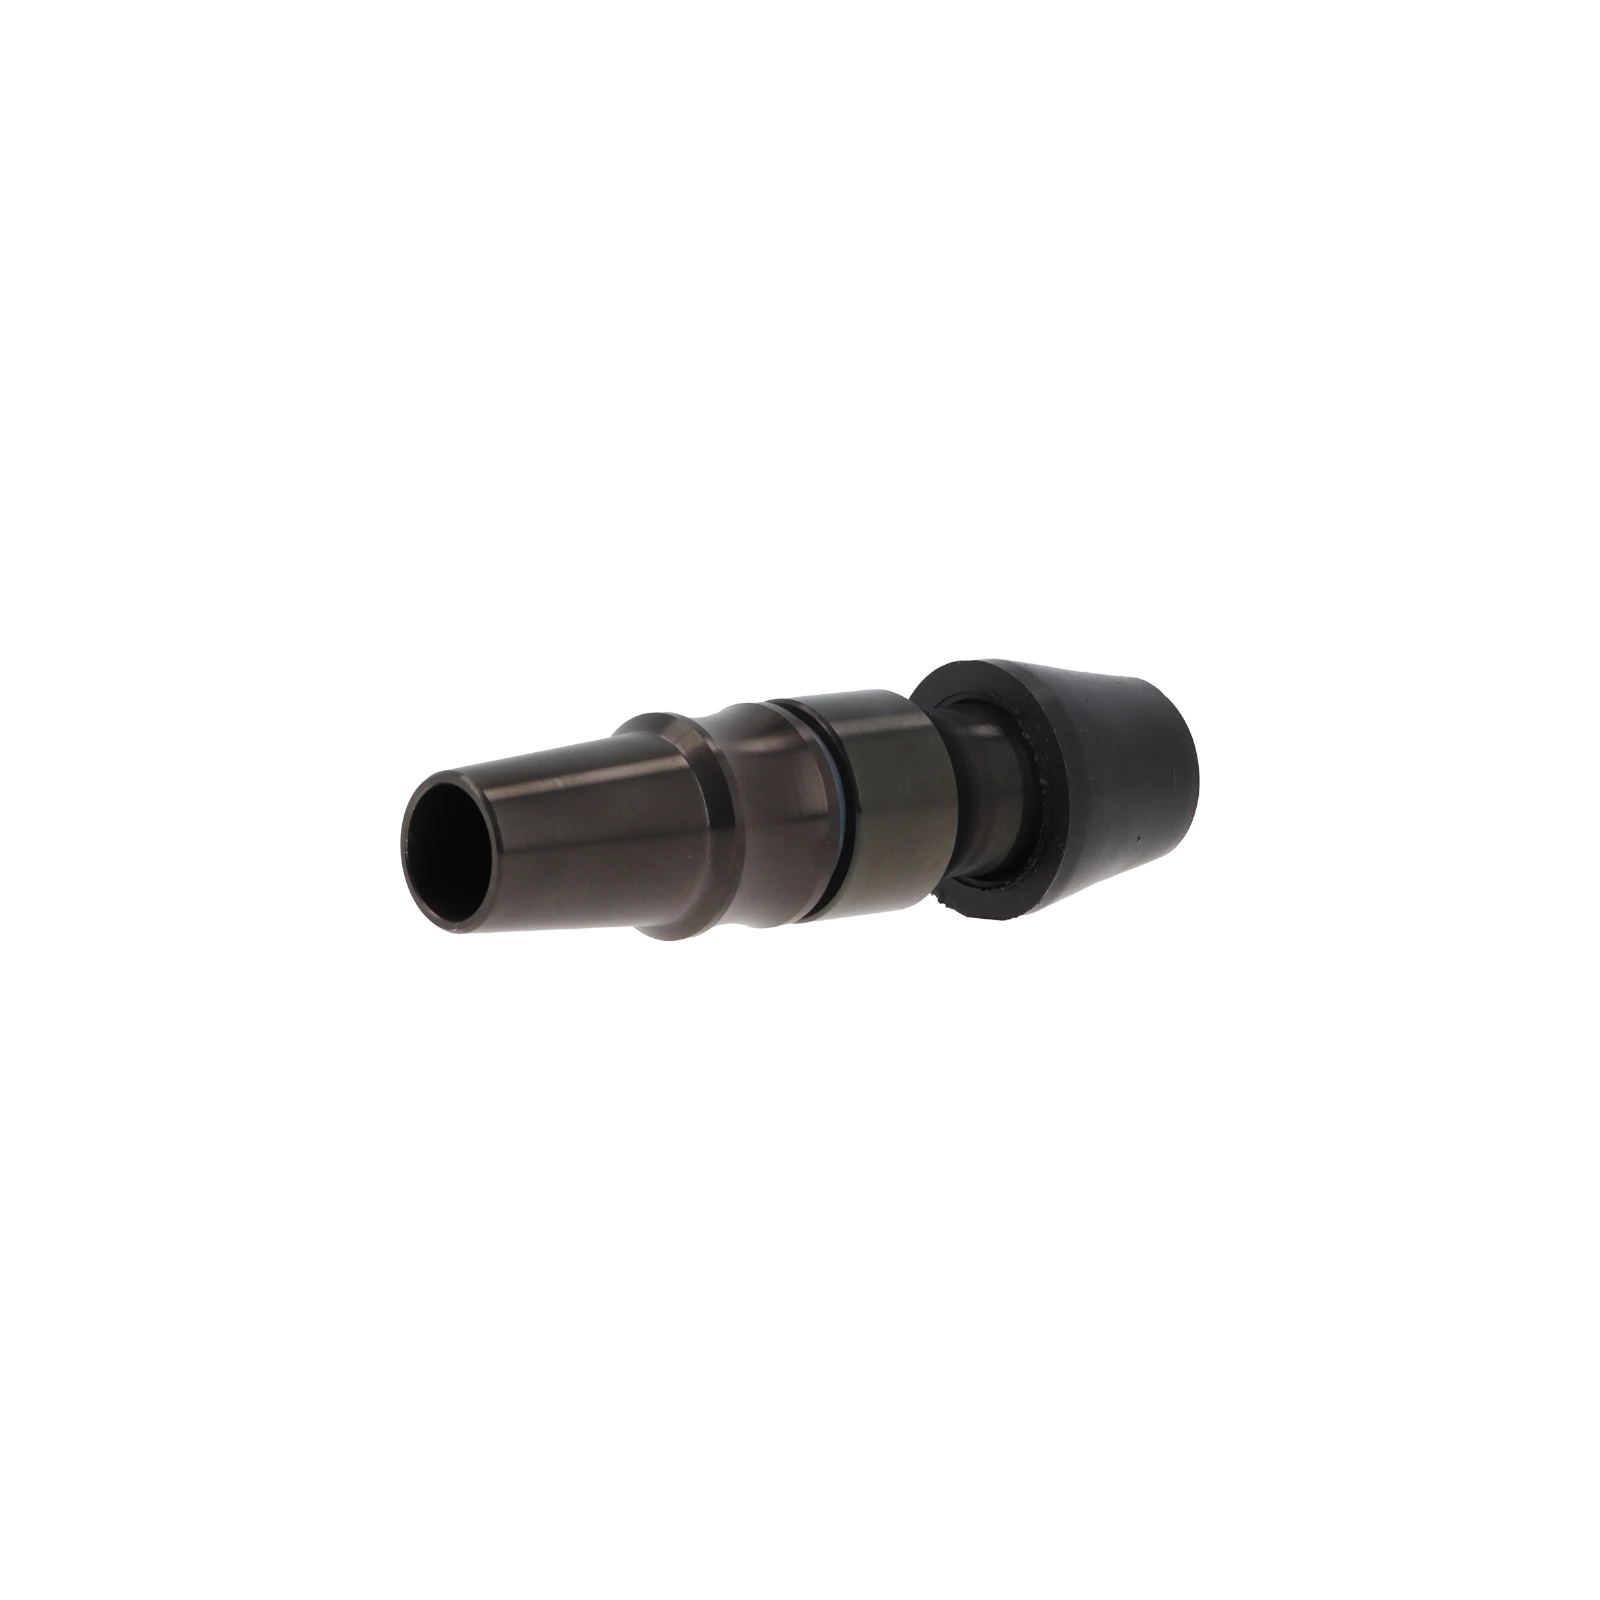 AO - SmokeTube - Adapter Set - Stainless Steel - 18/8 - Gun Metal